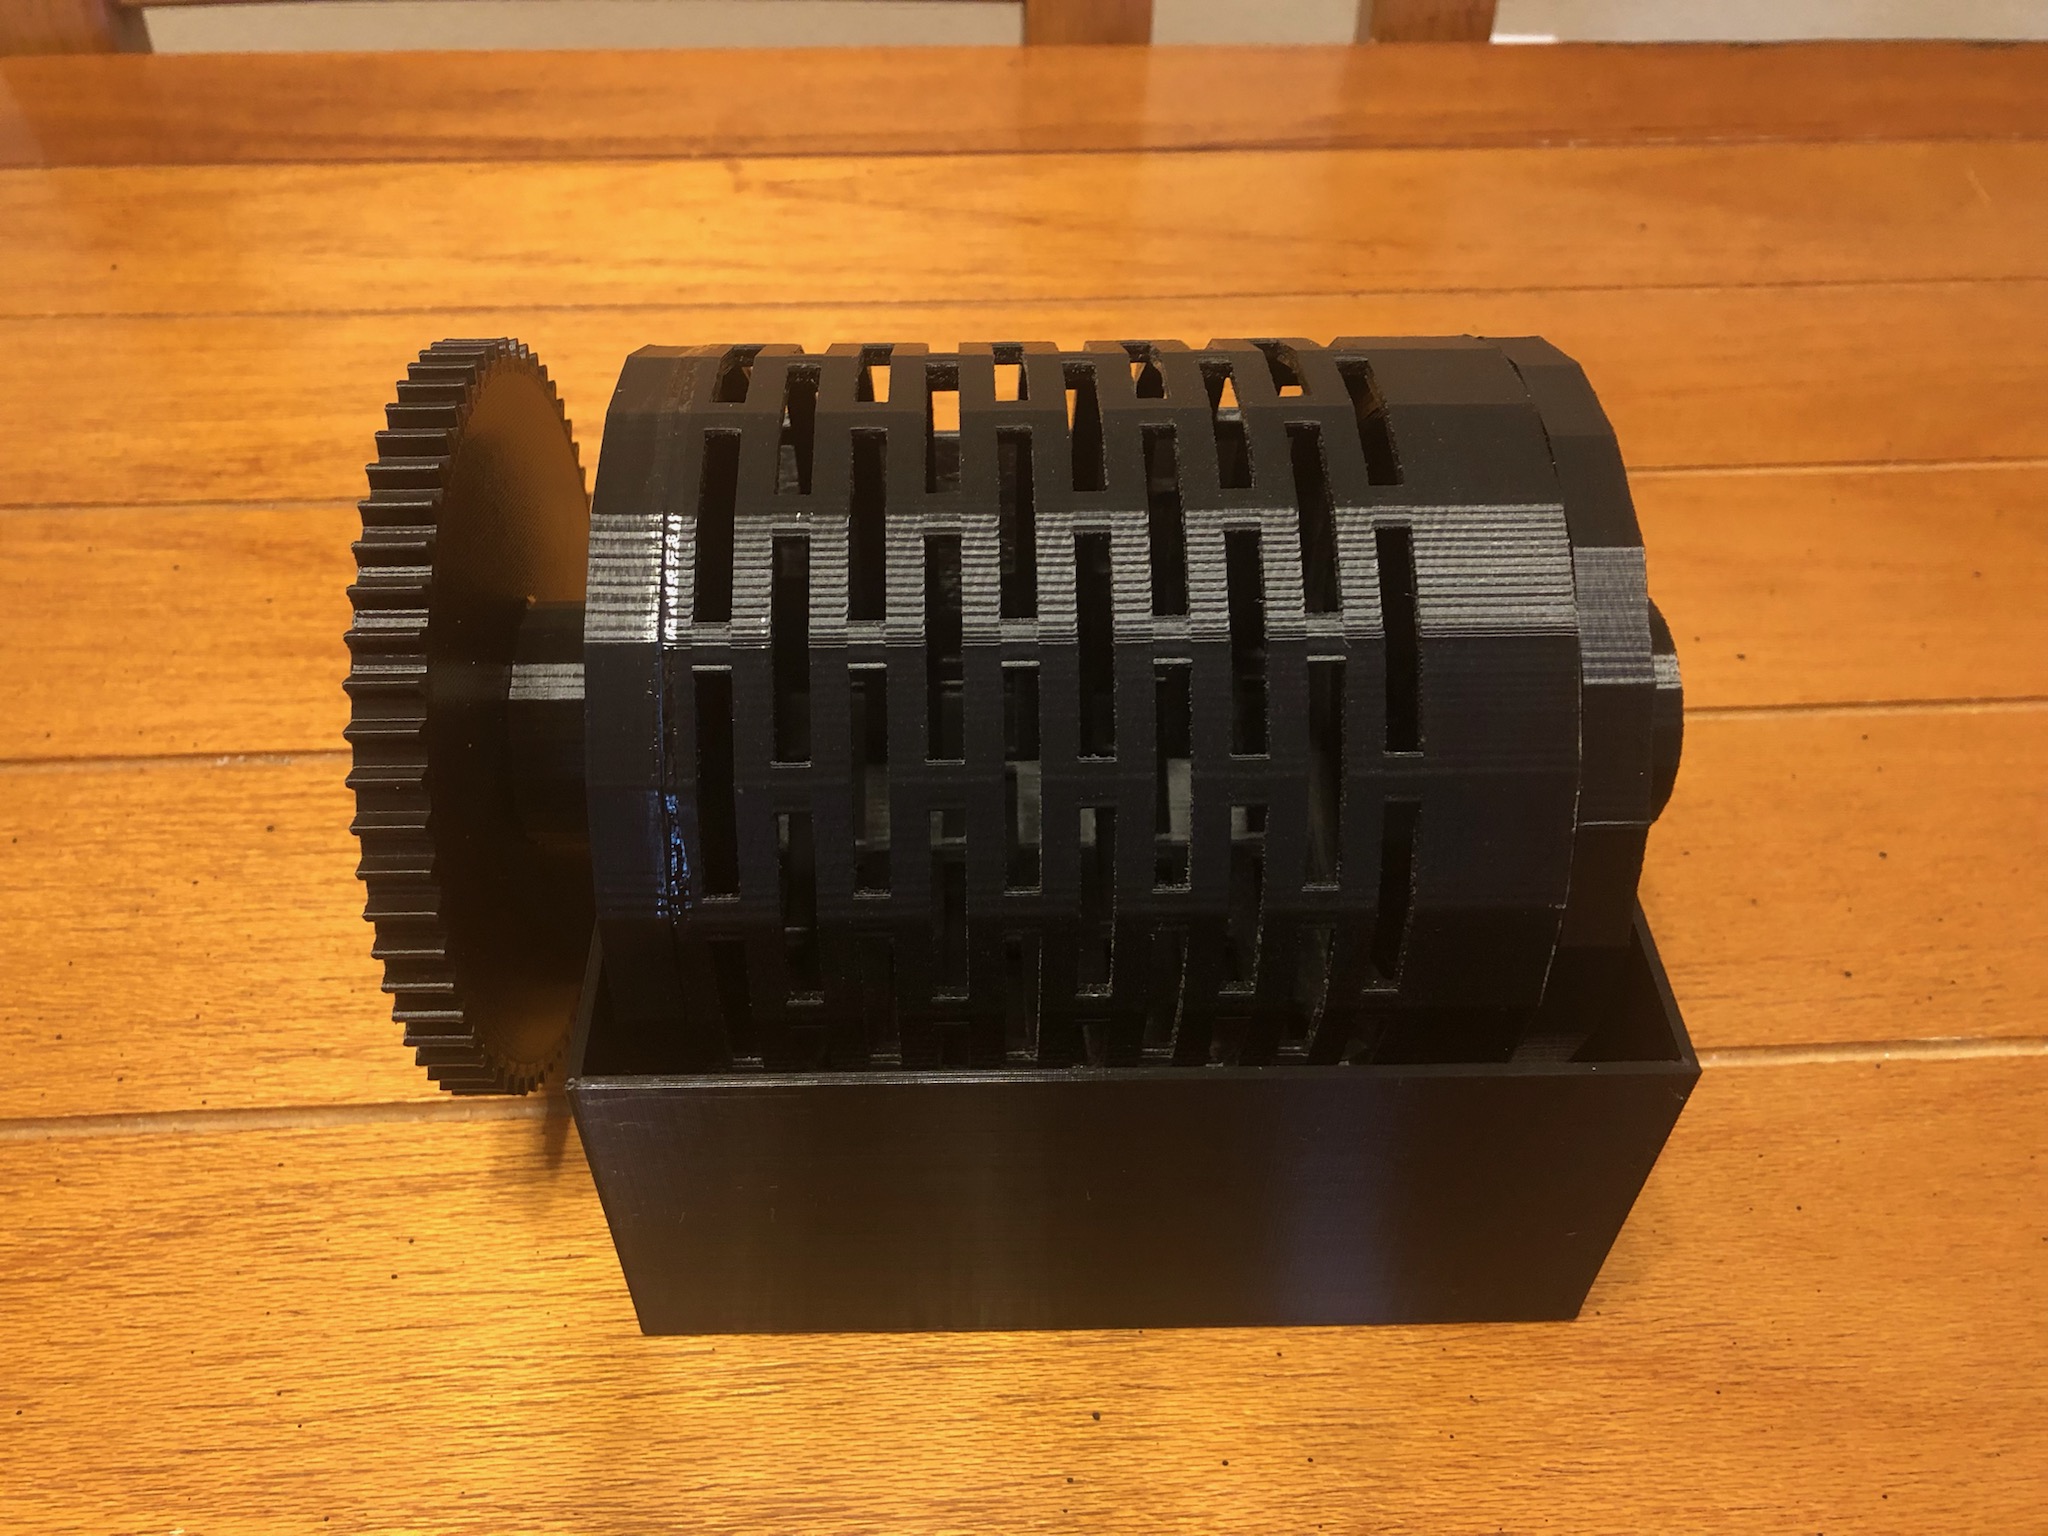 Plating Barrel Construction – 3D Printed